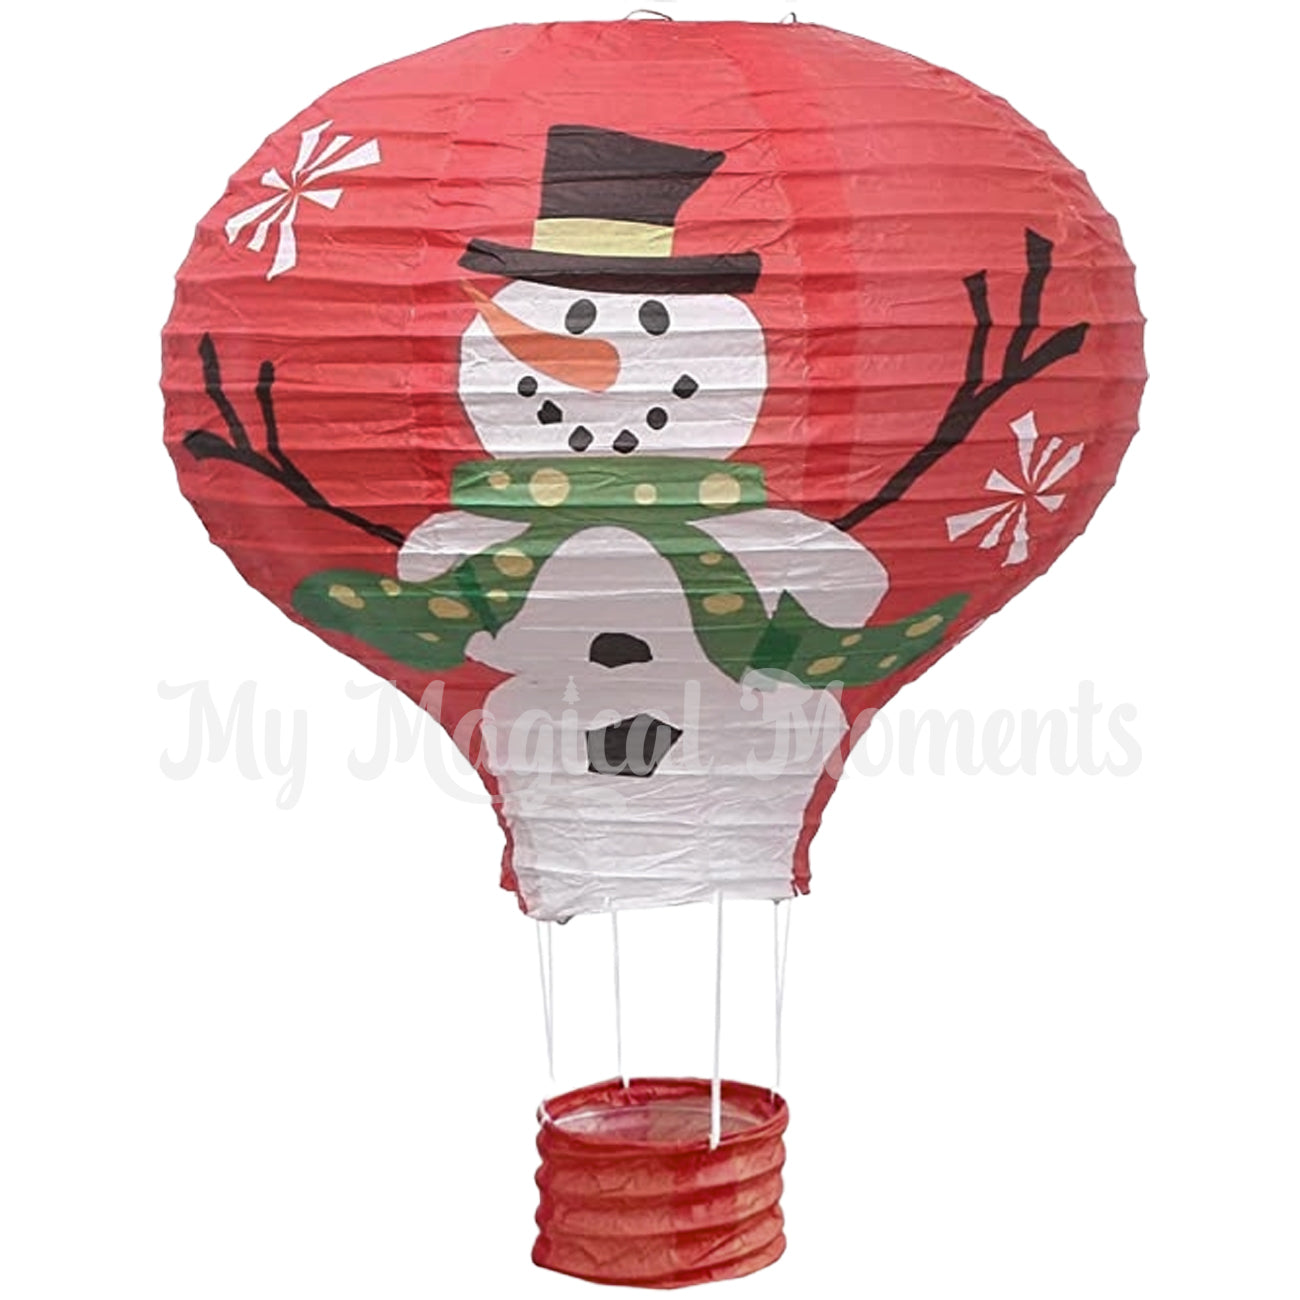 Snowman Hot air balloon